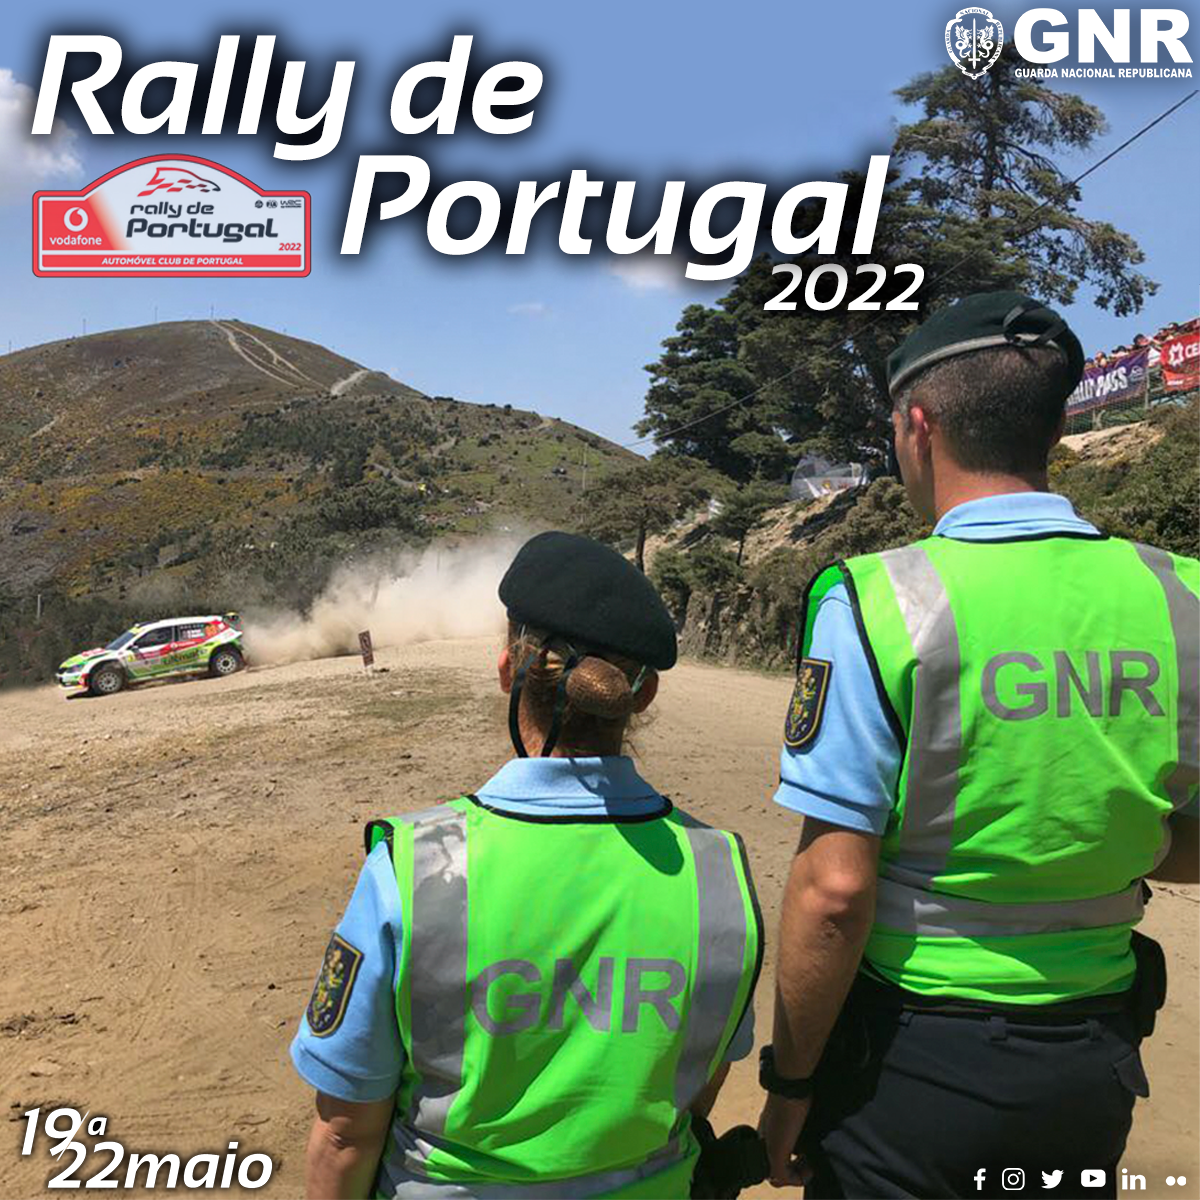 GNR: Operação de Segurança – WRC Vodafone Rally de Portugal 2022 - Balanço 1.º dia